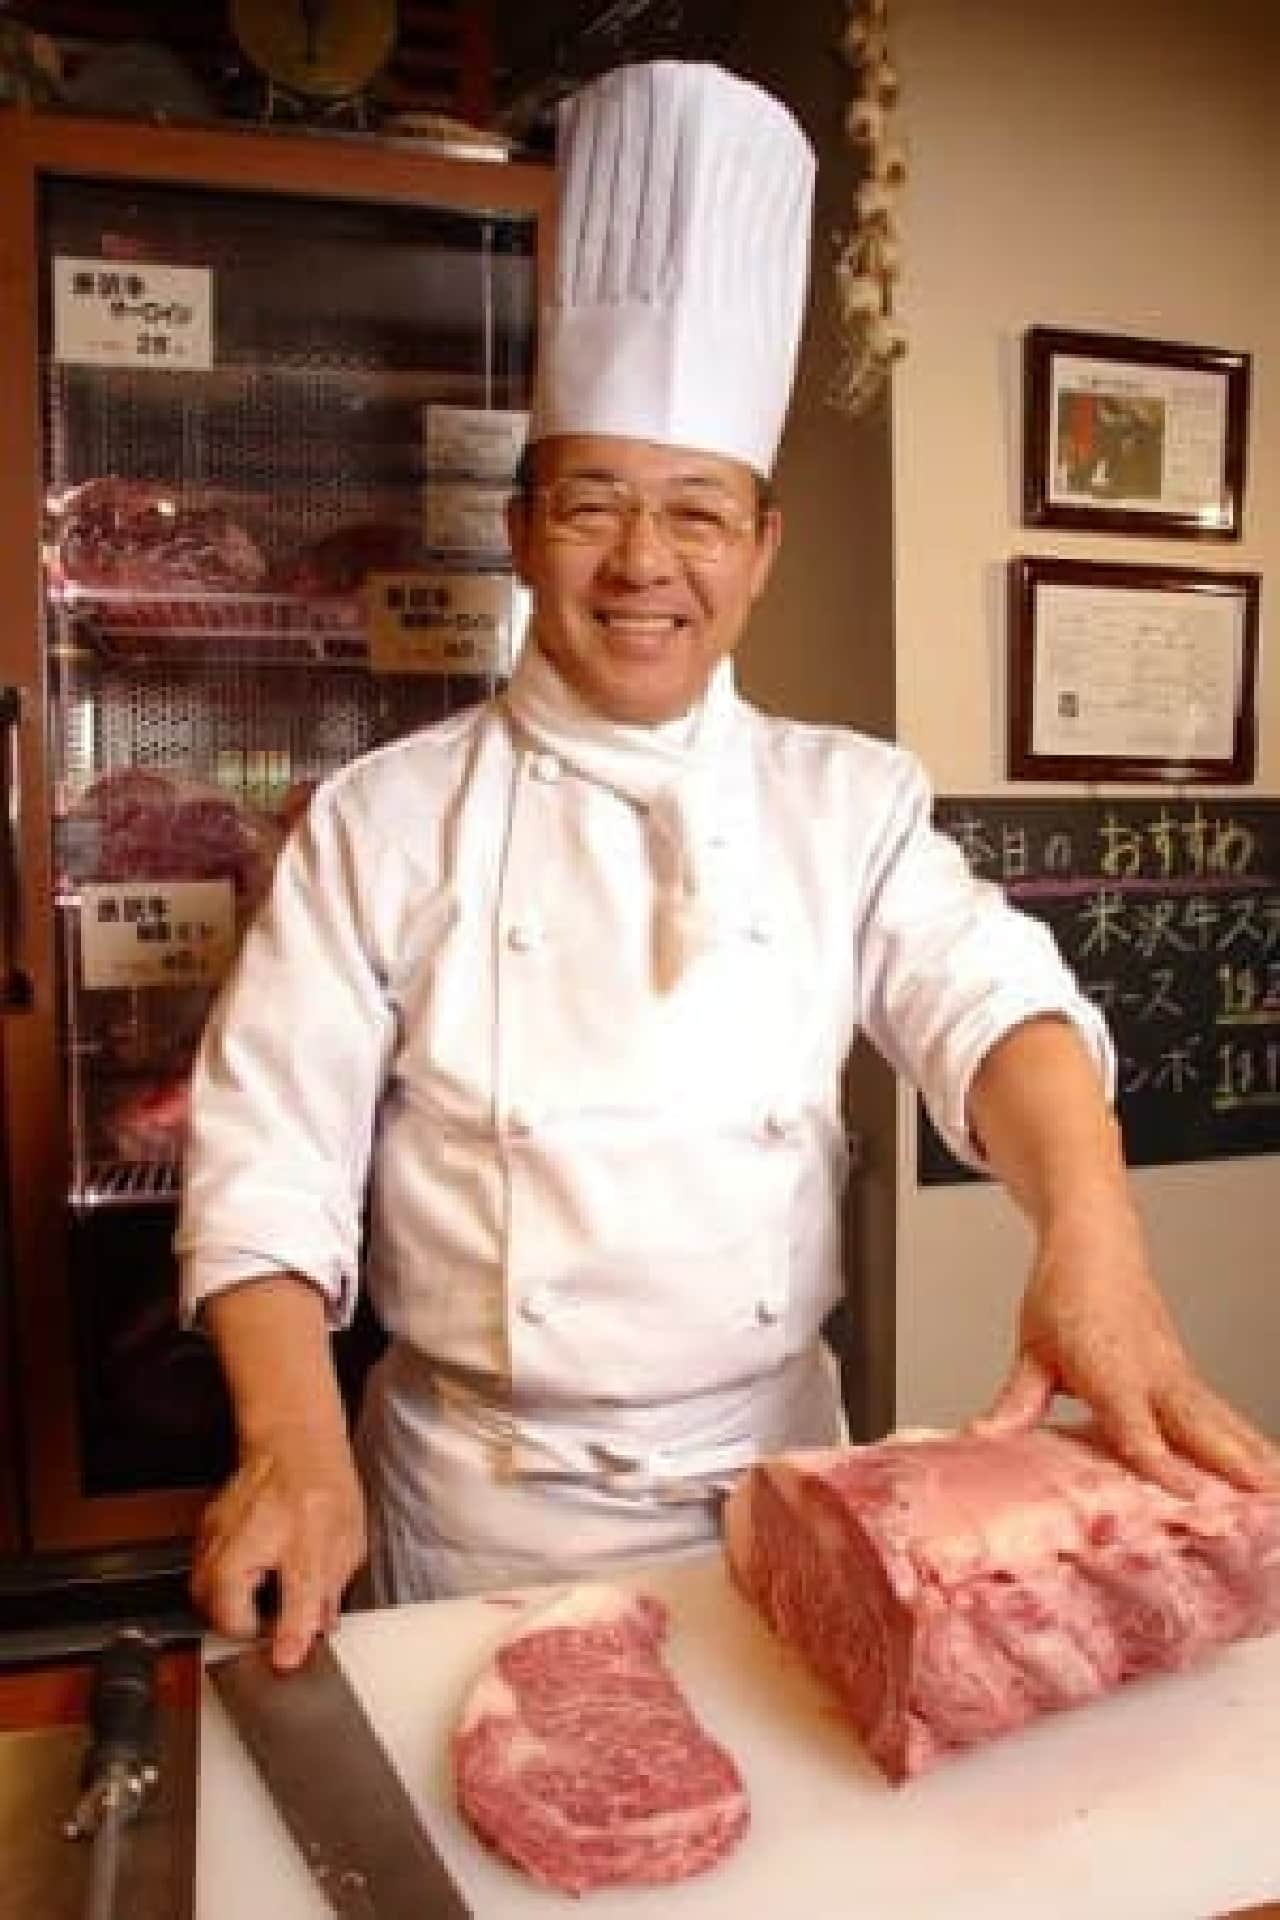 "Meaty" steak shop opens